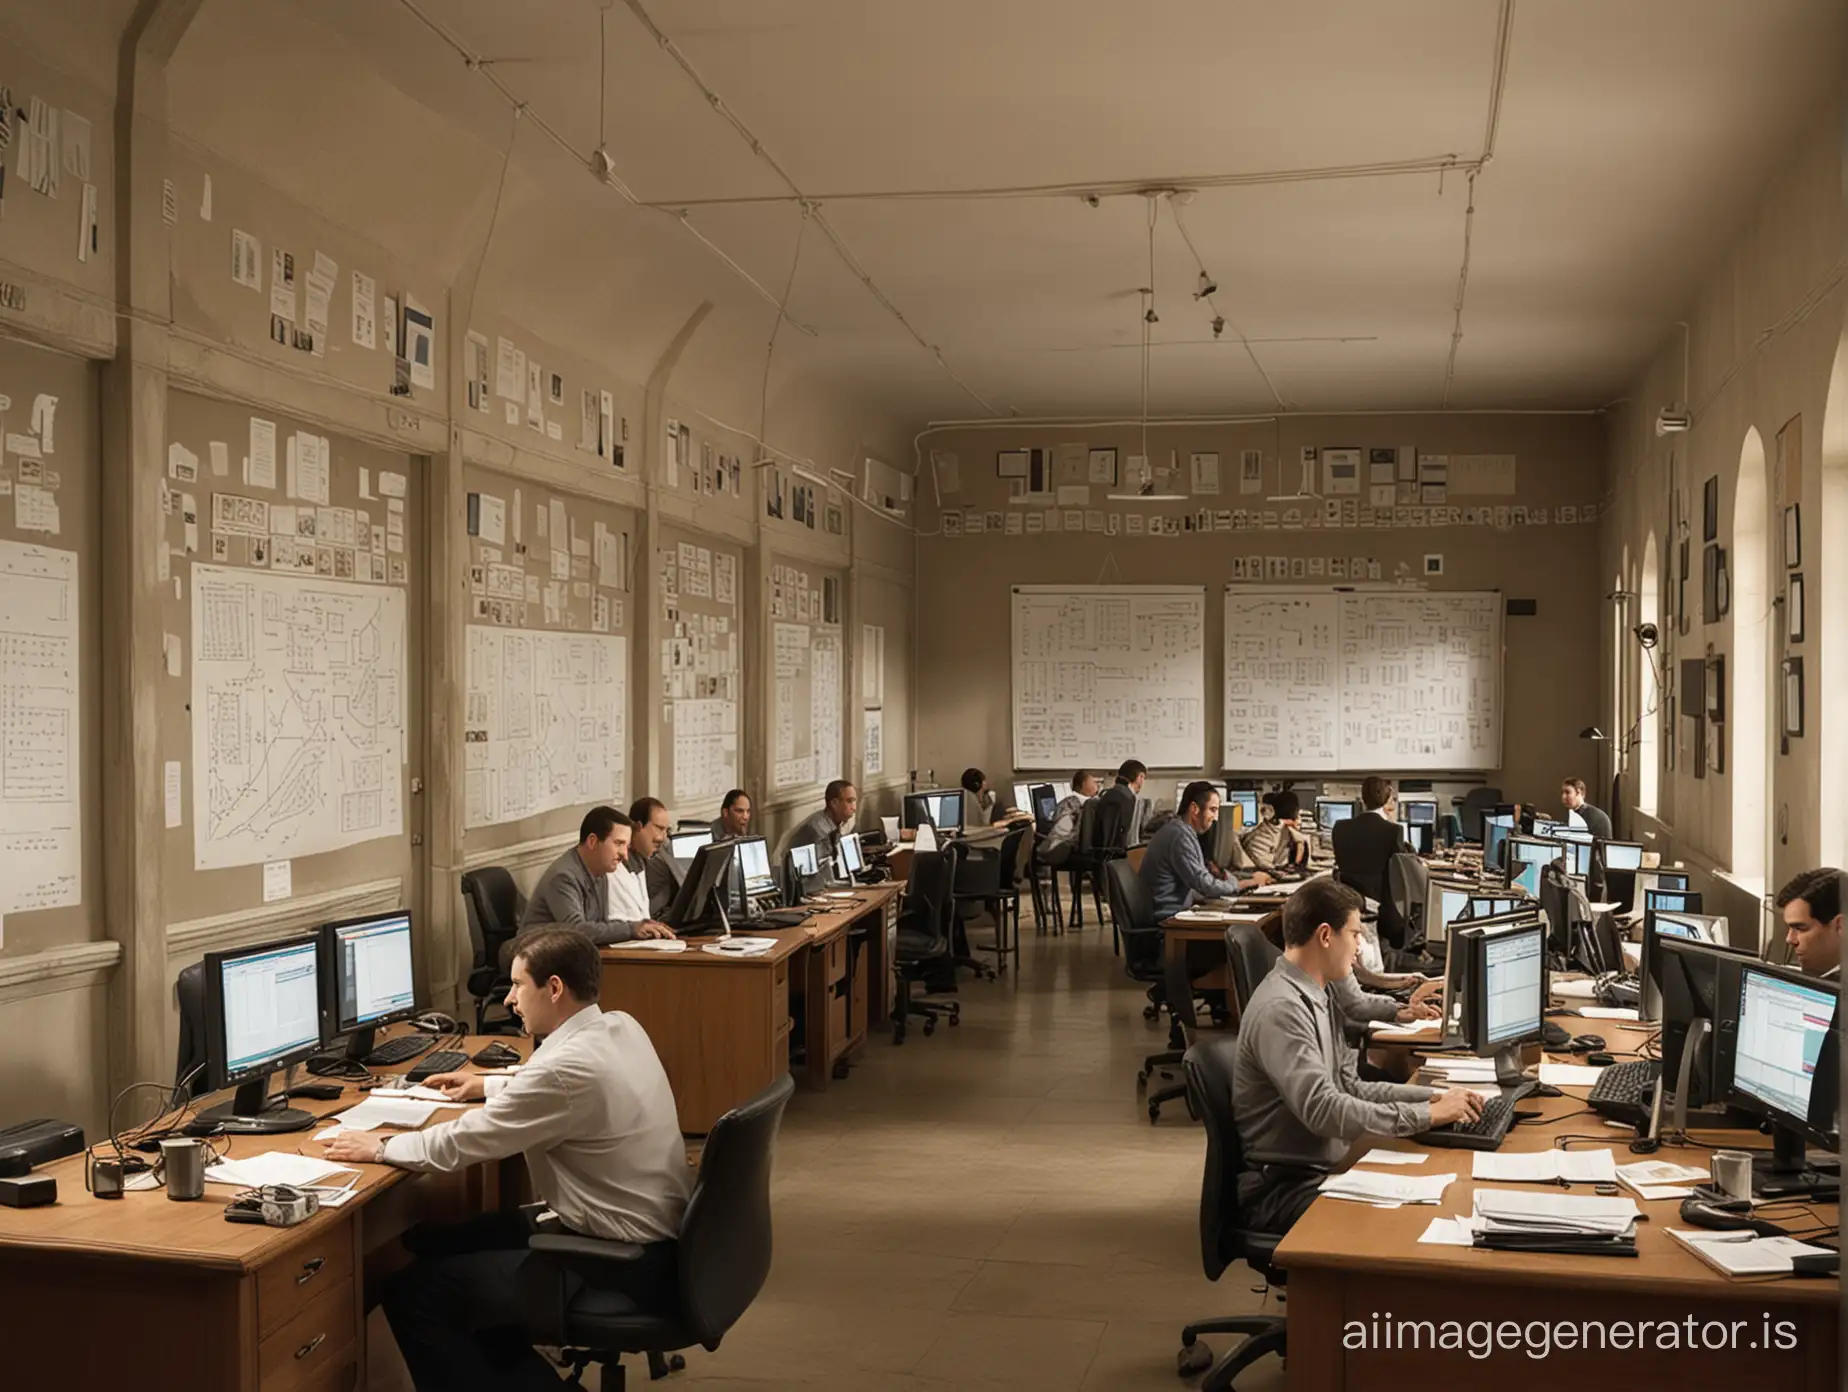 восемь мужчин сидят за компьютерами в красивом зале, а на стенах висят схемы и графики